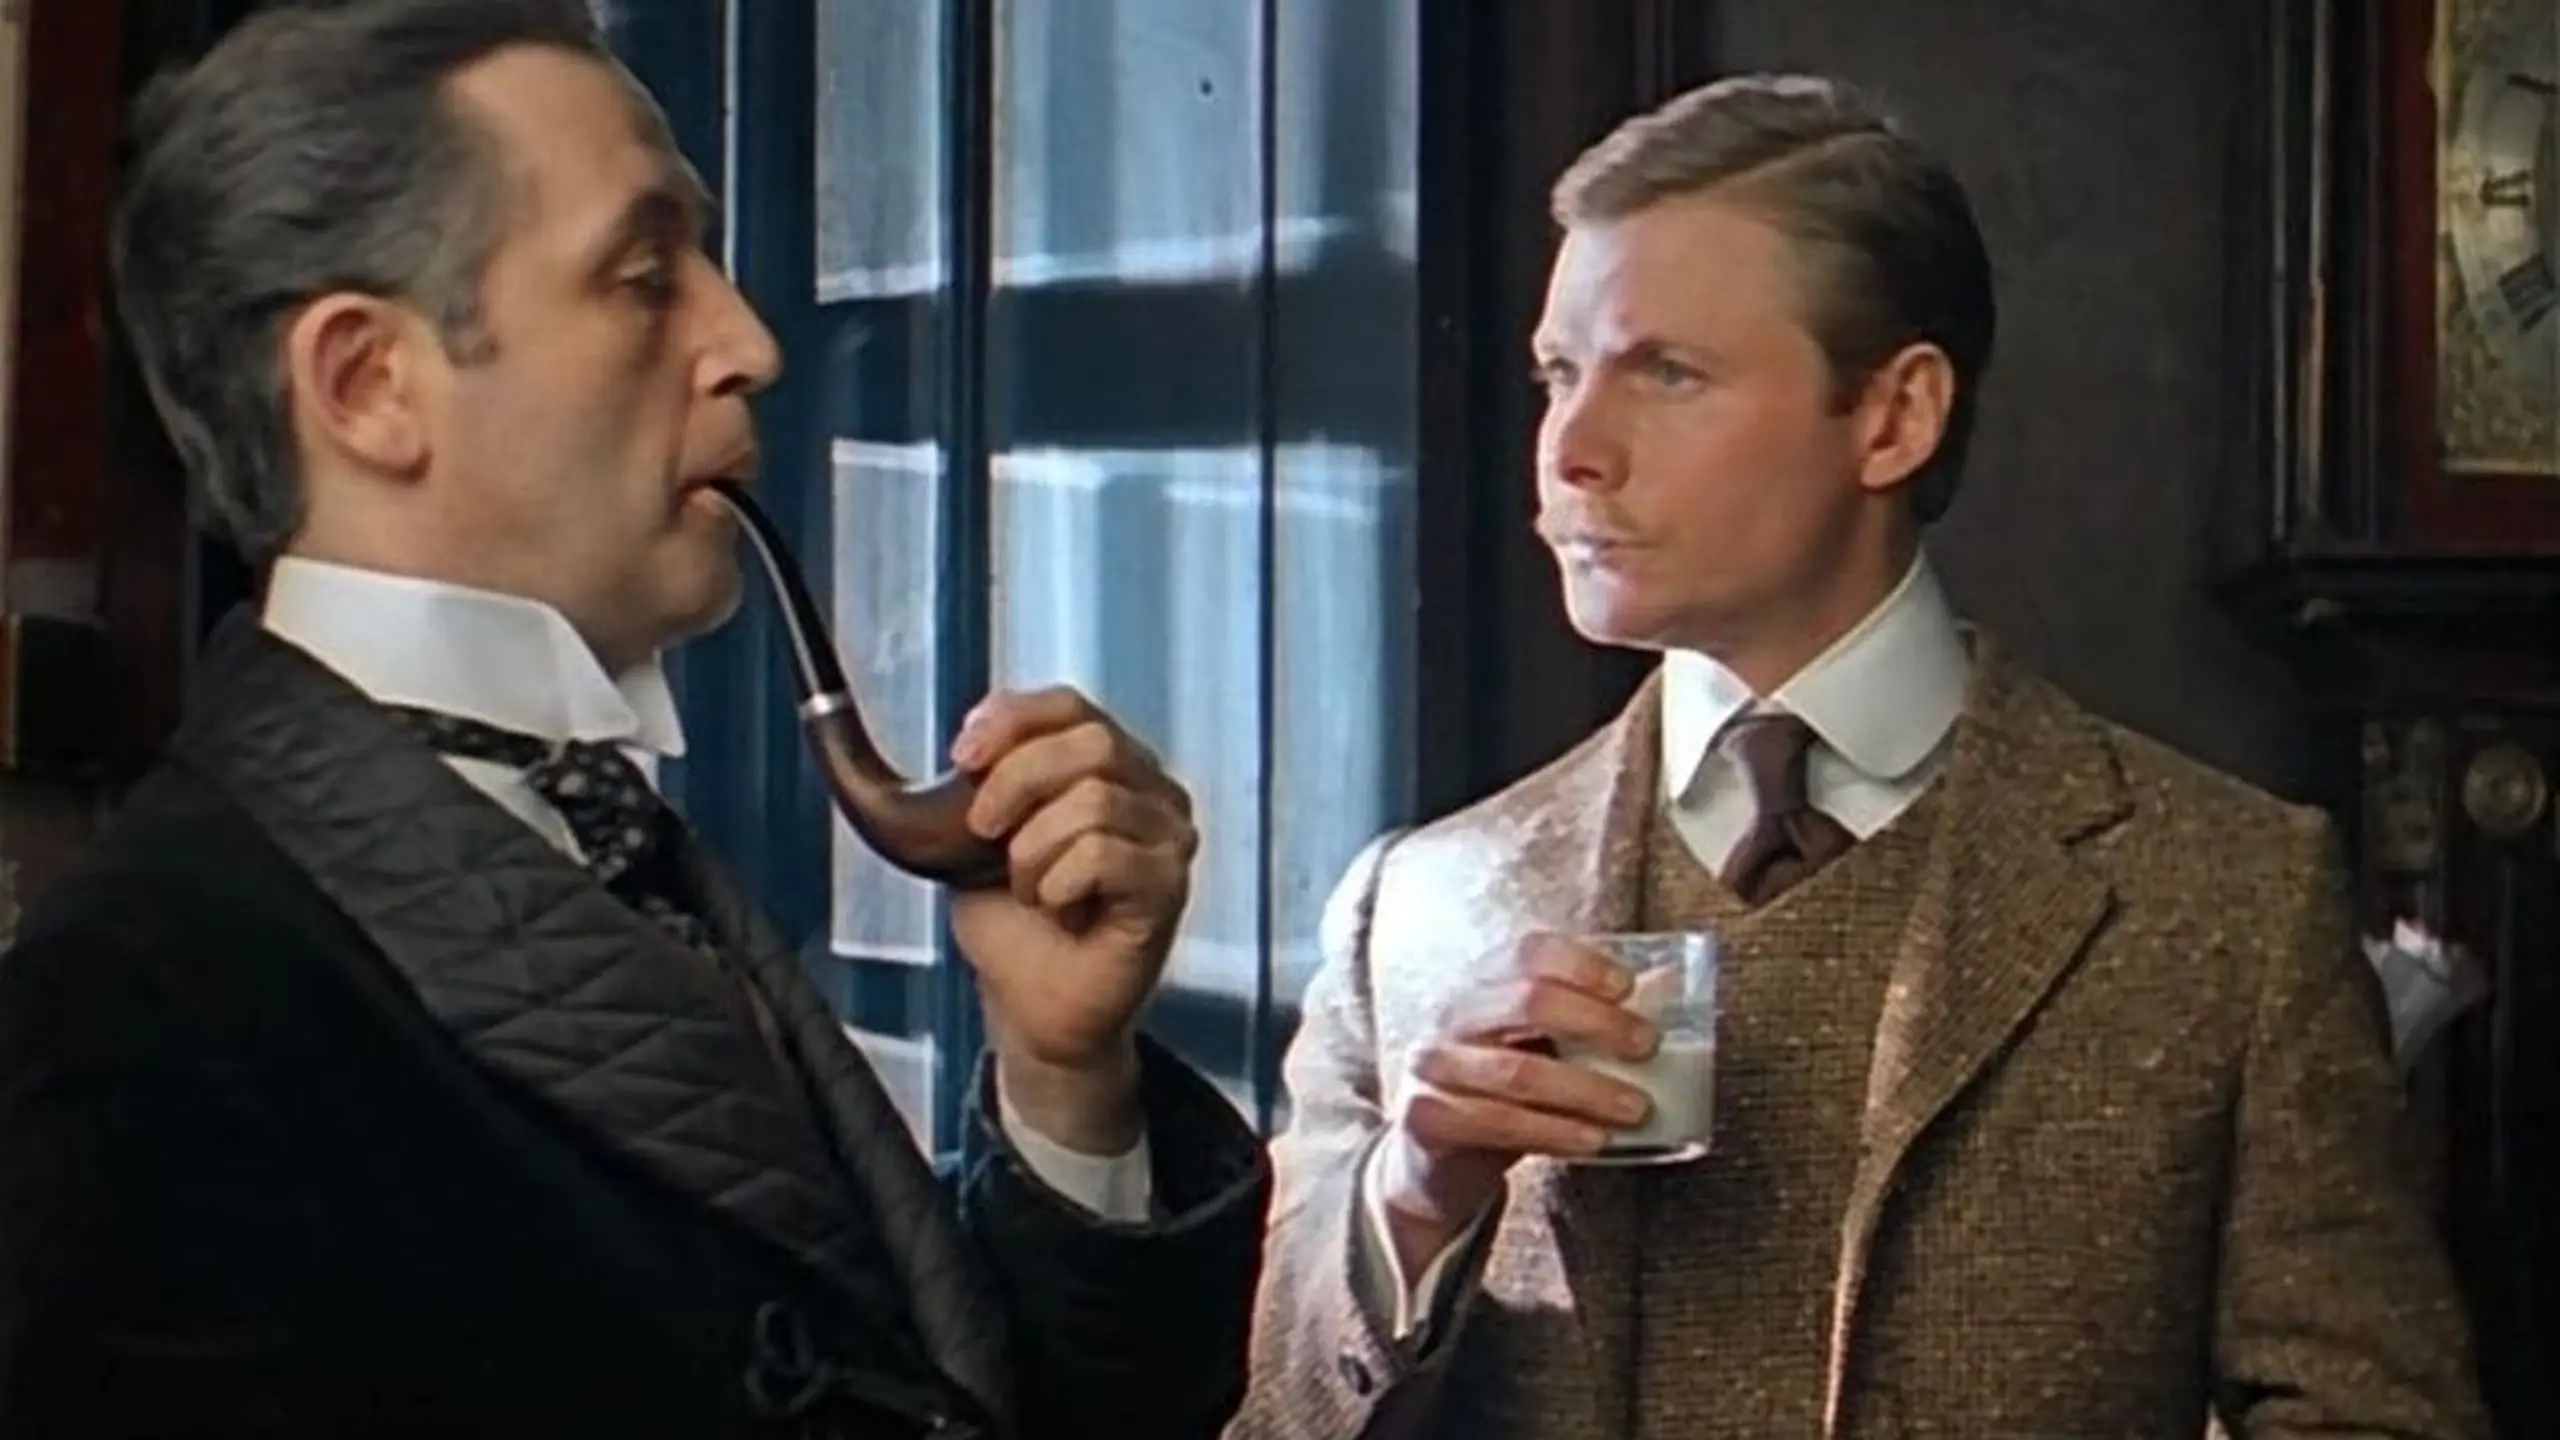 Приключения Шерлока Холмса и доктора Ватсона: Сокровища Агры. Часть 2